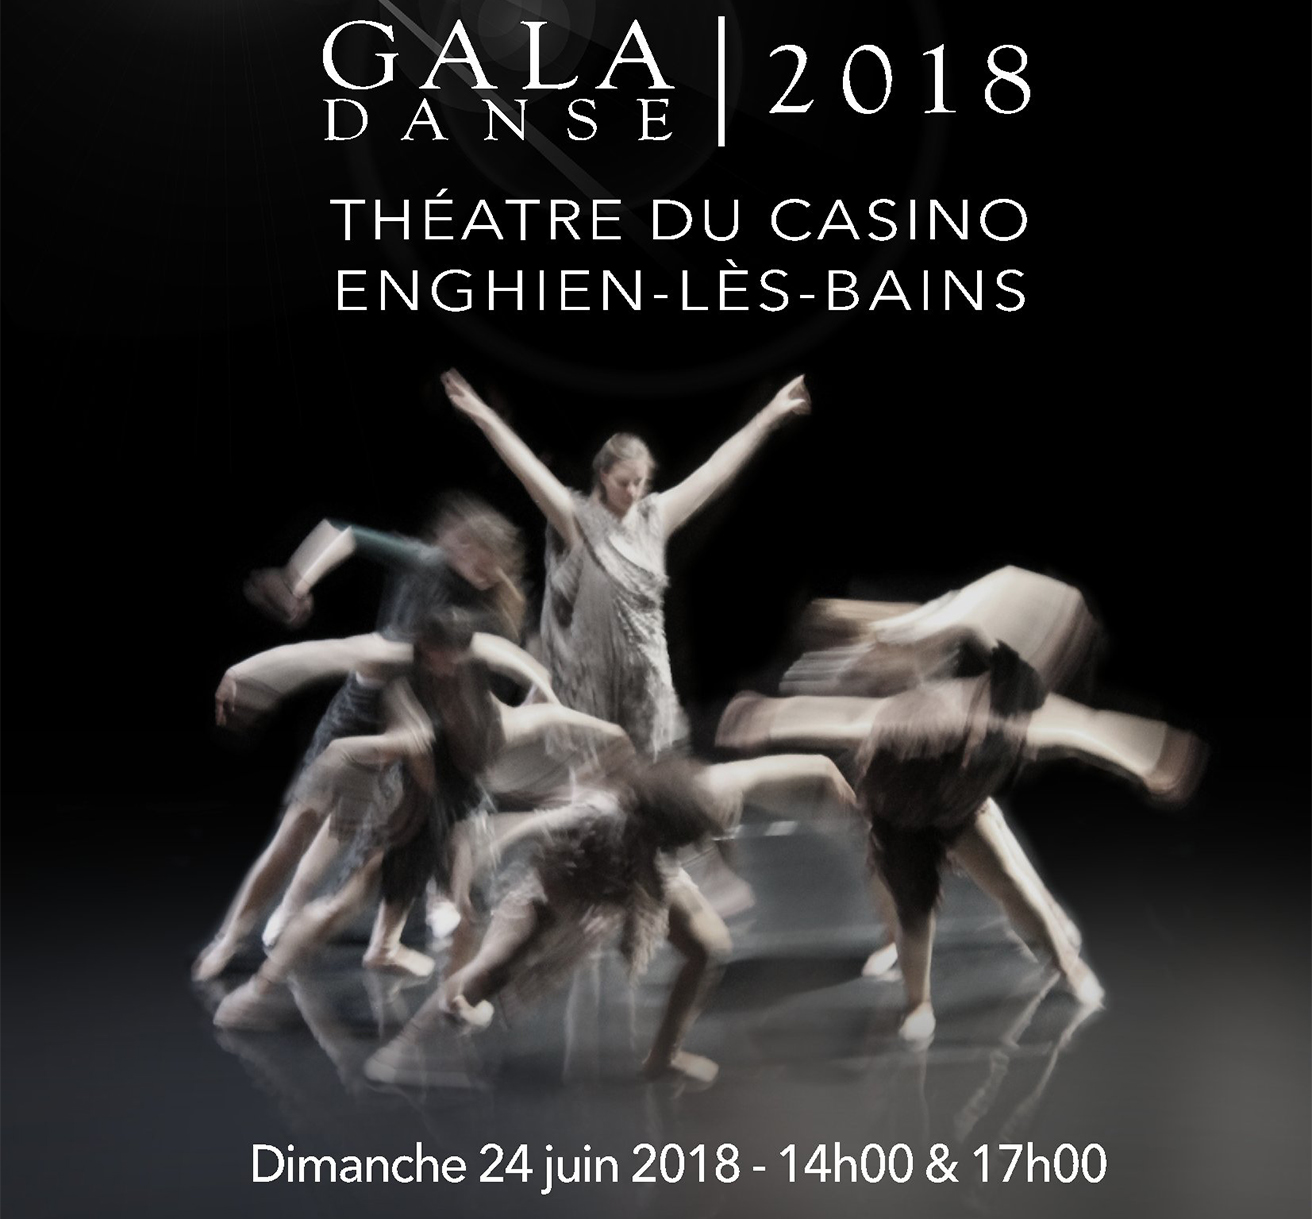 Gala 2018: Le film est disponible